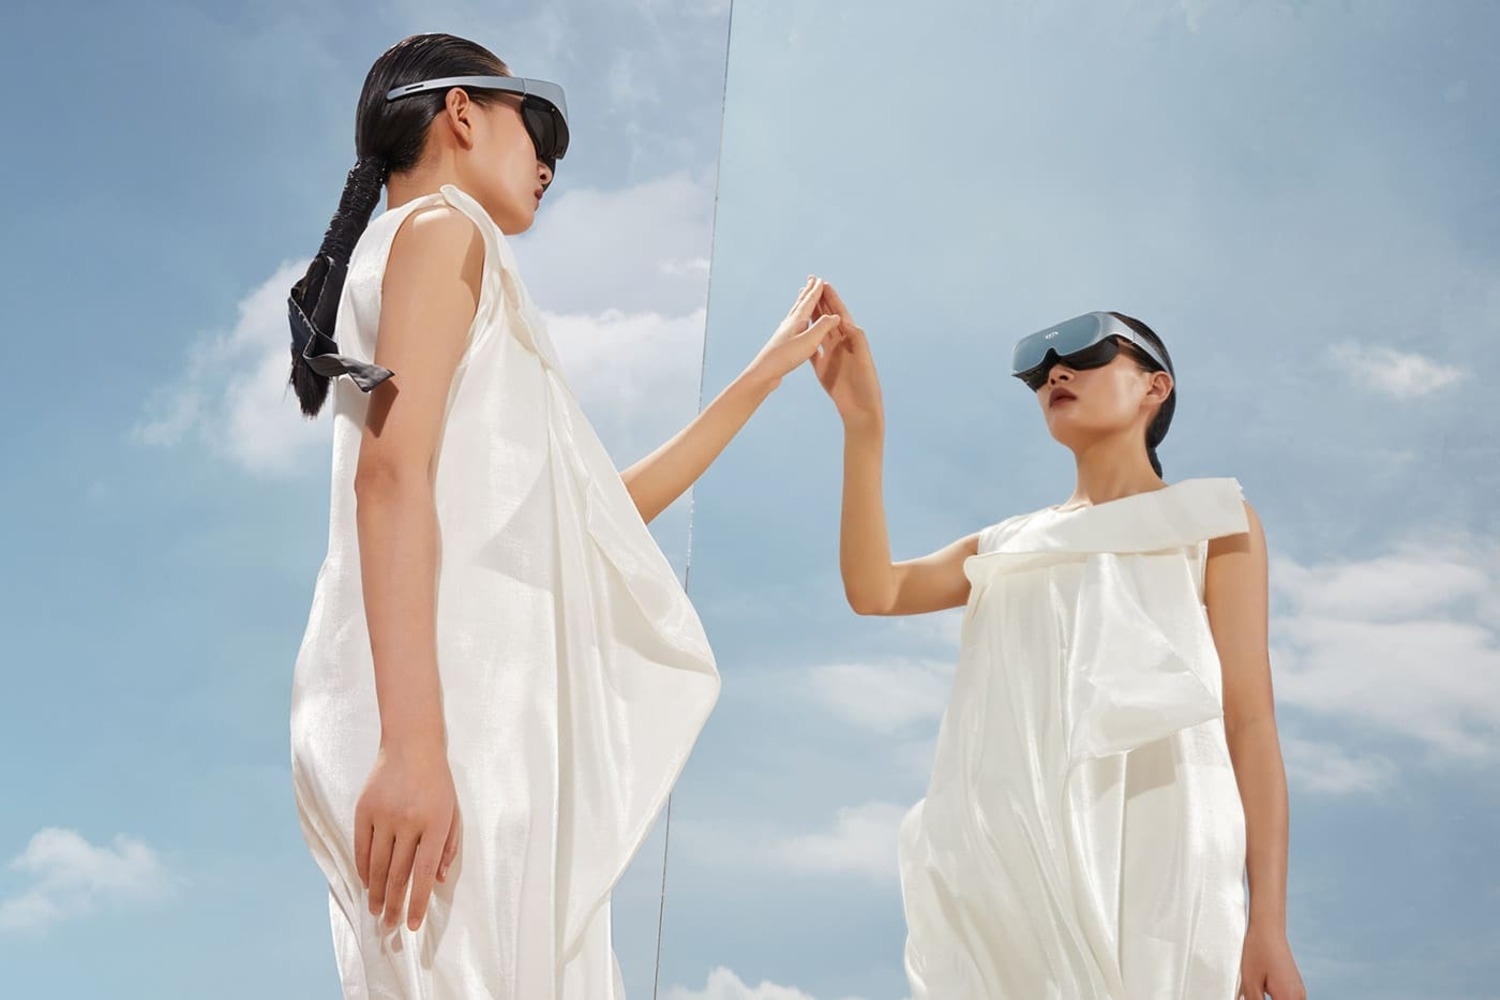 VR-фильмы: анализируем перспективы формата и смотрим современные работы